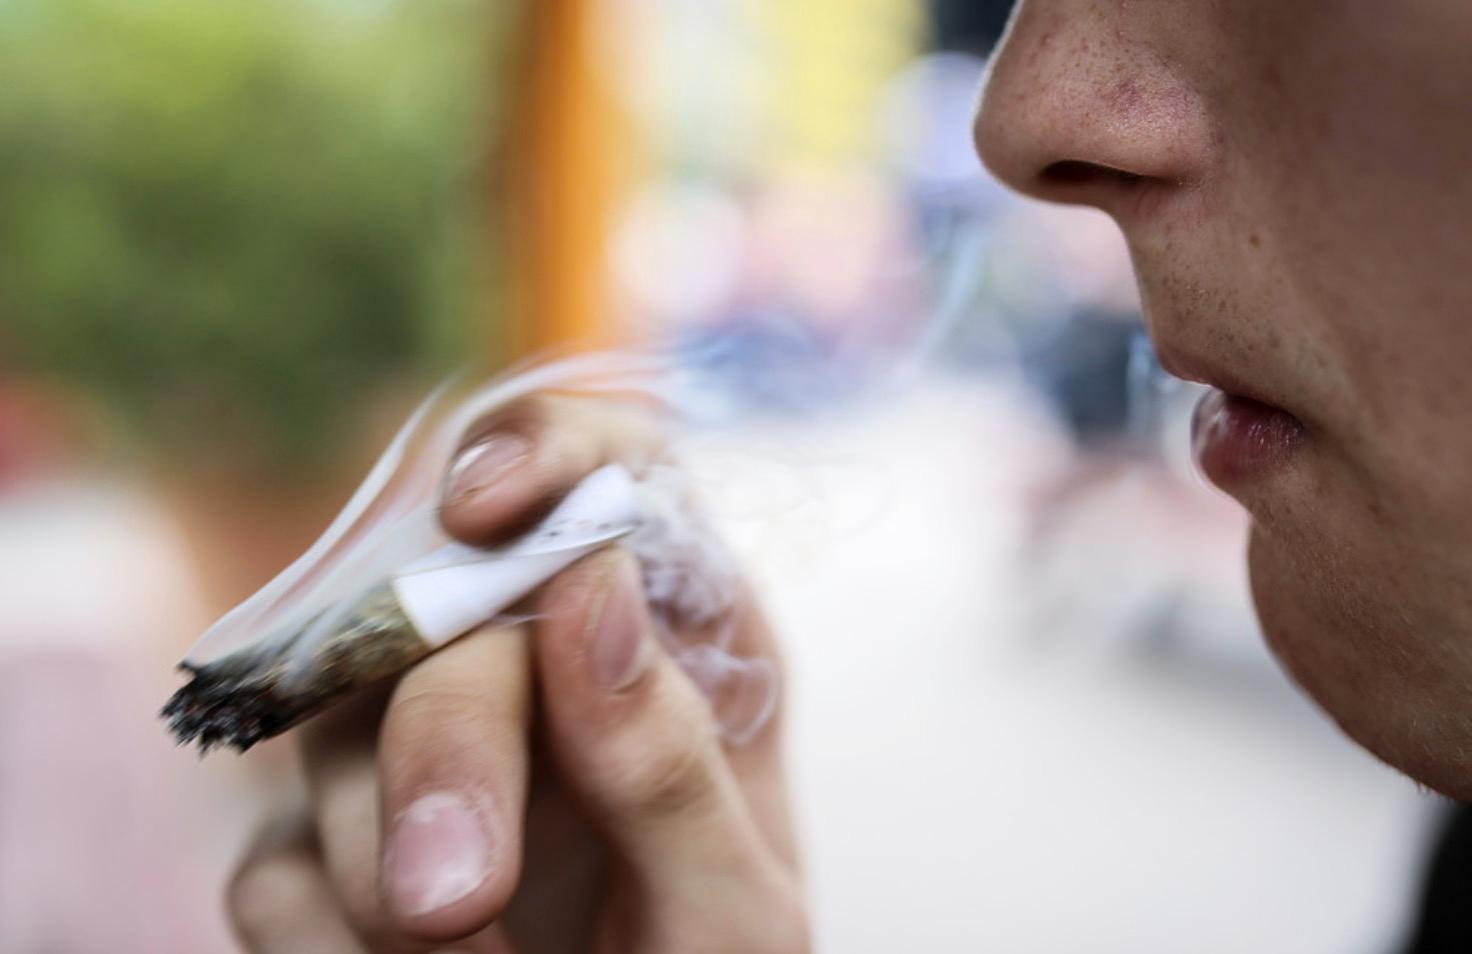 Snart kan det bli lagligt att röka cannabis i medicinskt syfte i Danmark – men först en prövoperiod.